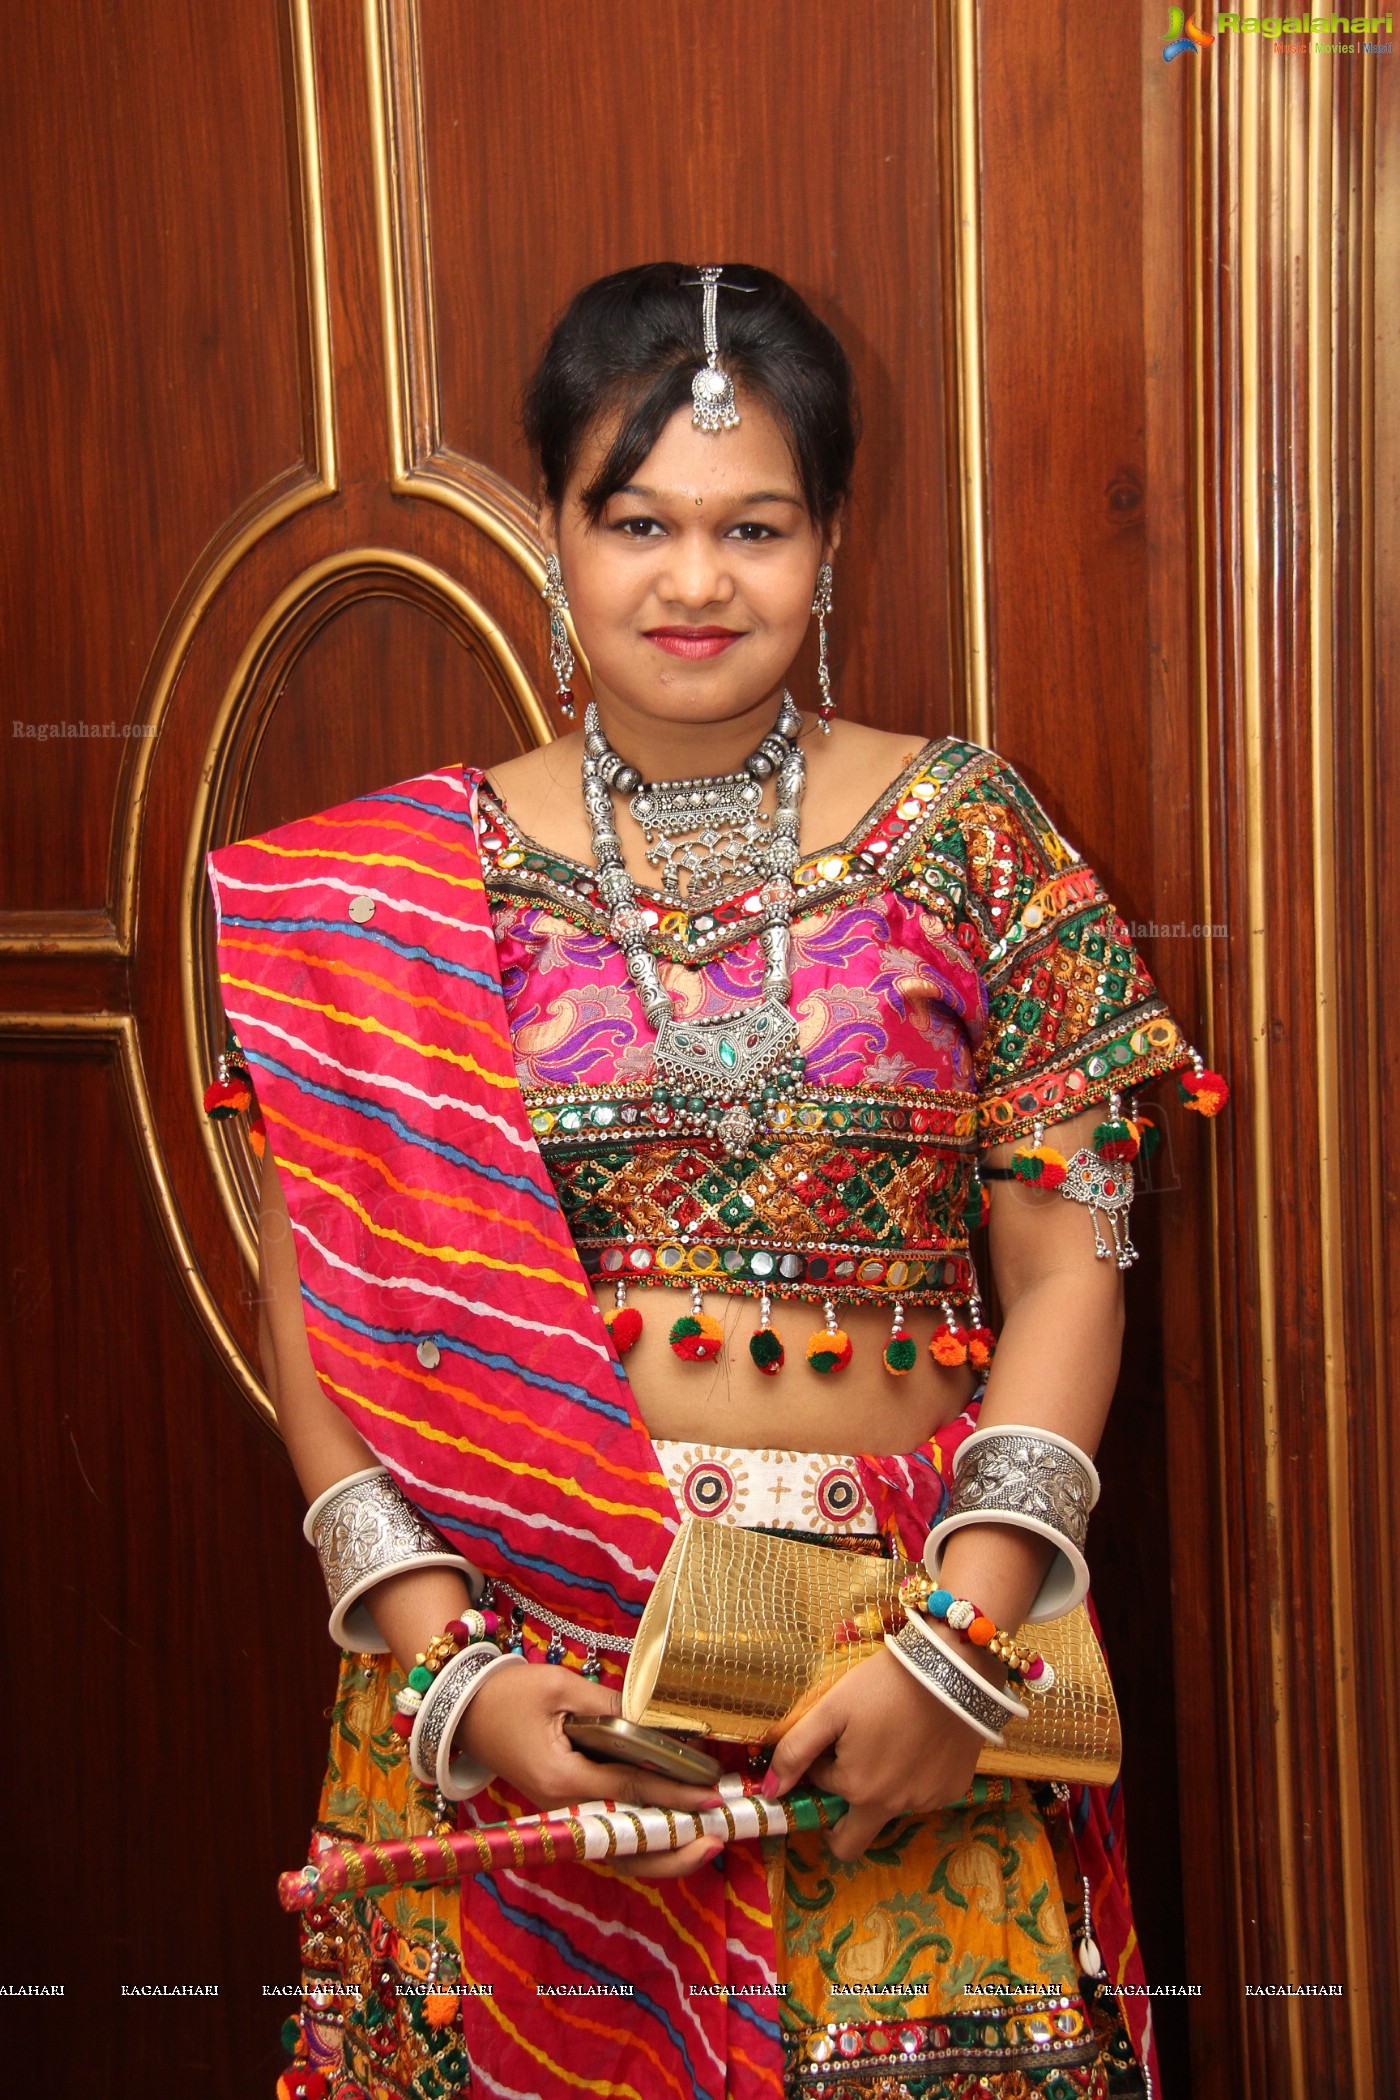 BWB Presents Garba Dandiya Dhamaka 2013 at A'la Liberty, Hyderabad